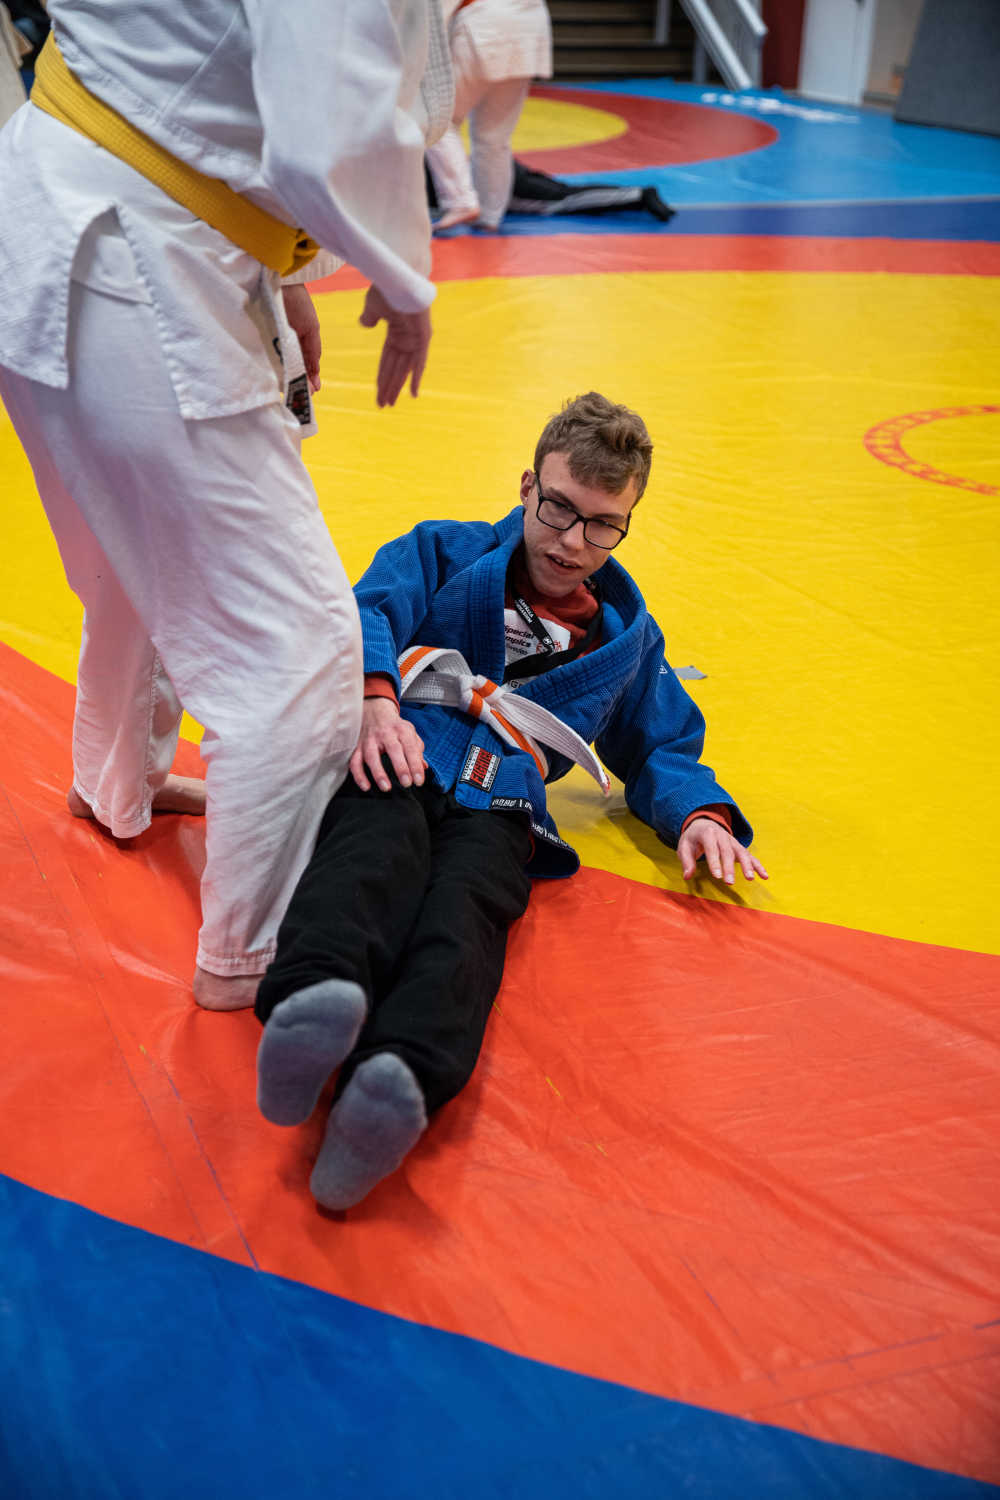 En kille tränar fall med judoinstruktören. Här håller han på att ta sig upp till sittande på mattan. Mattan är en cirkel med gult i mitten, sedan en röd cirkel och längst ut blått.